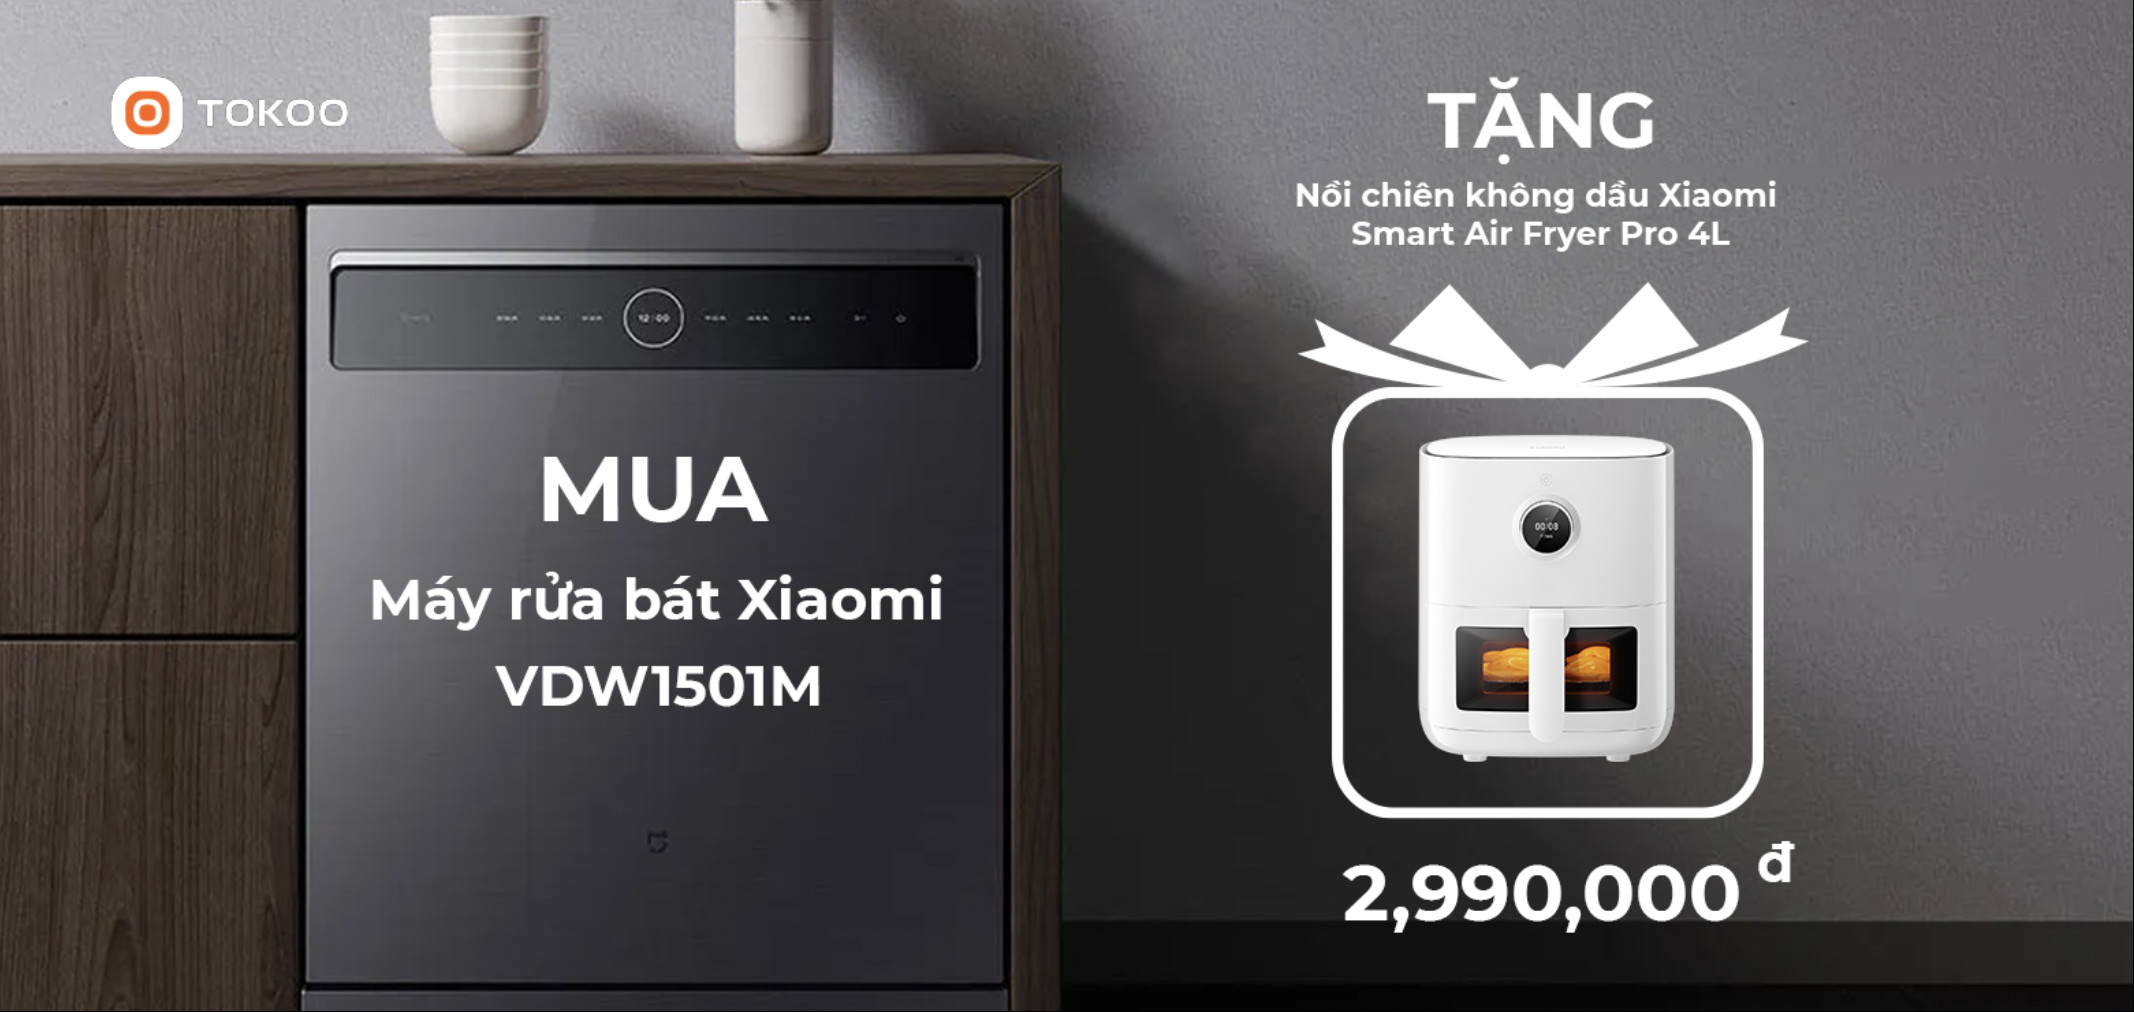 Máy rửa bát Xiaomi đứng độc lập 60cm cho 15 bộ chén đĩa VDW1501M